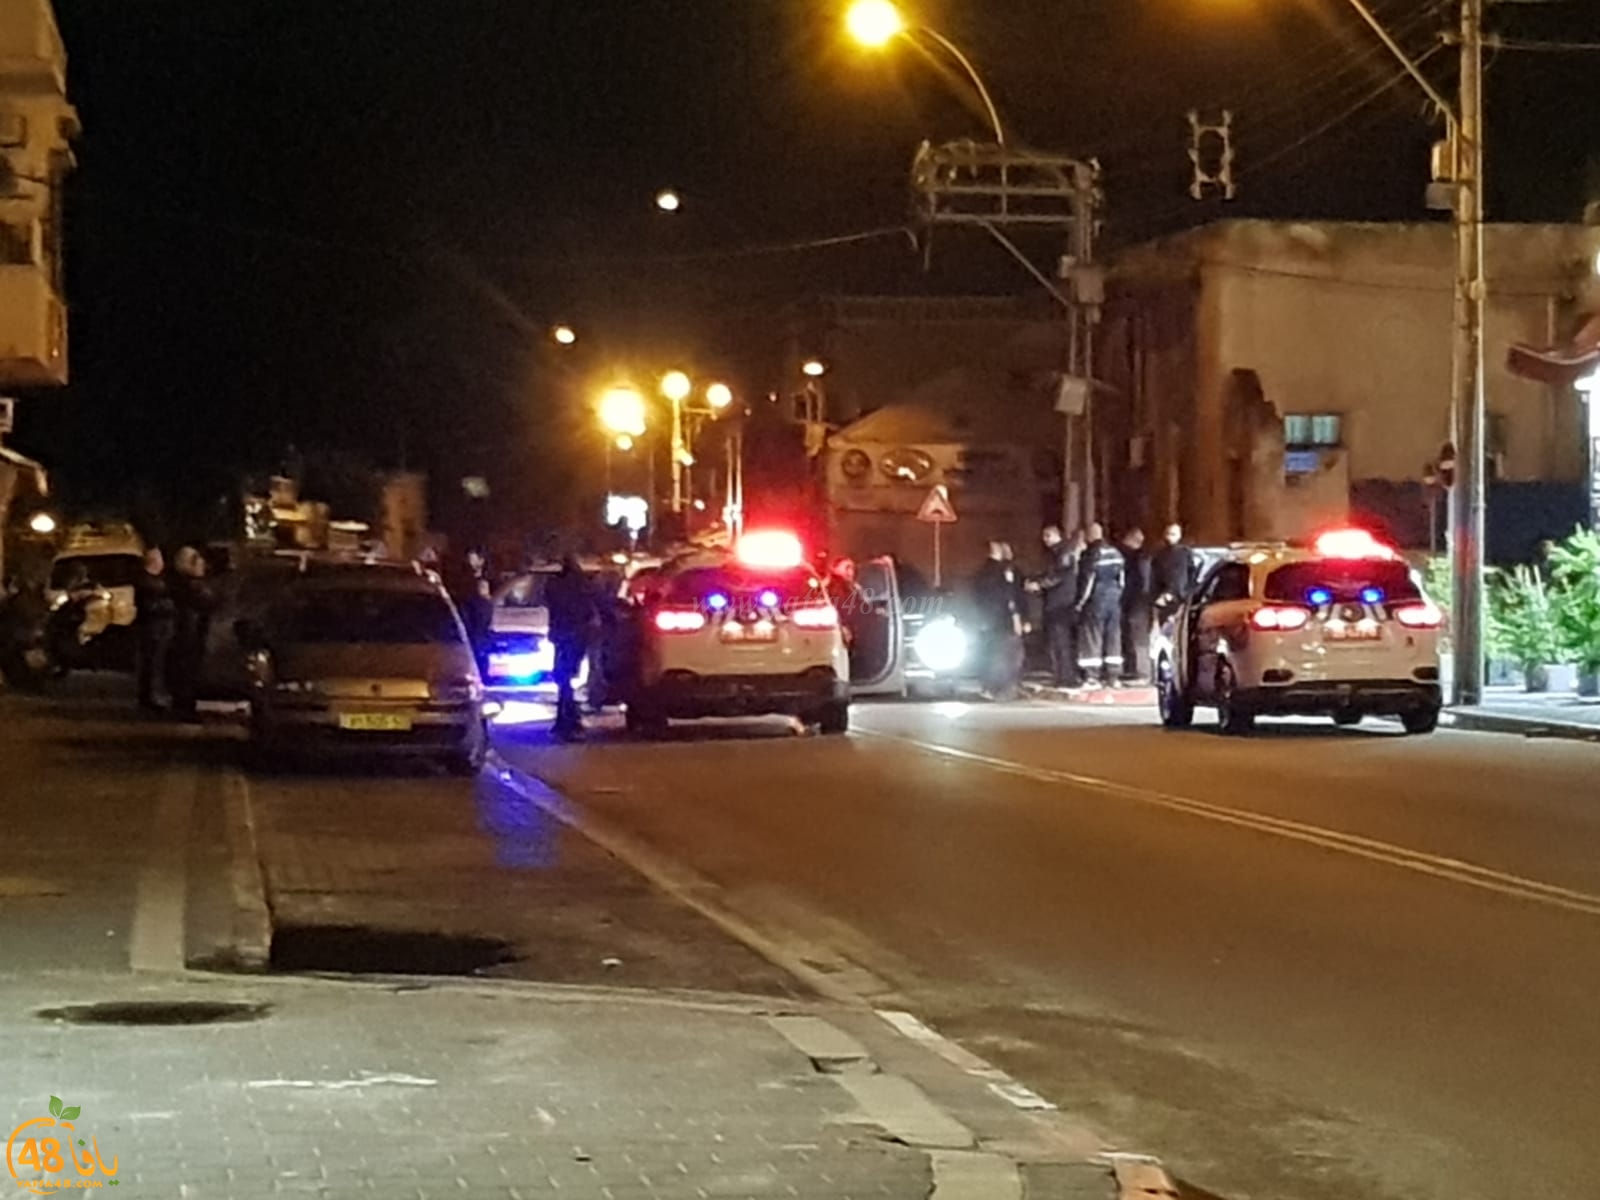 يافا: بعد منتصف الليلة - الشرطة تعتقل قاصرين دون اعلان الاسباب